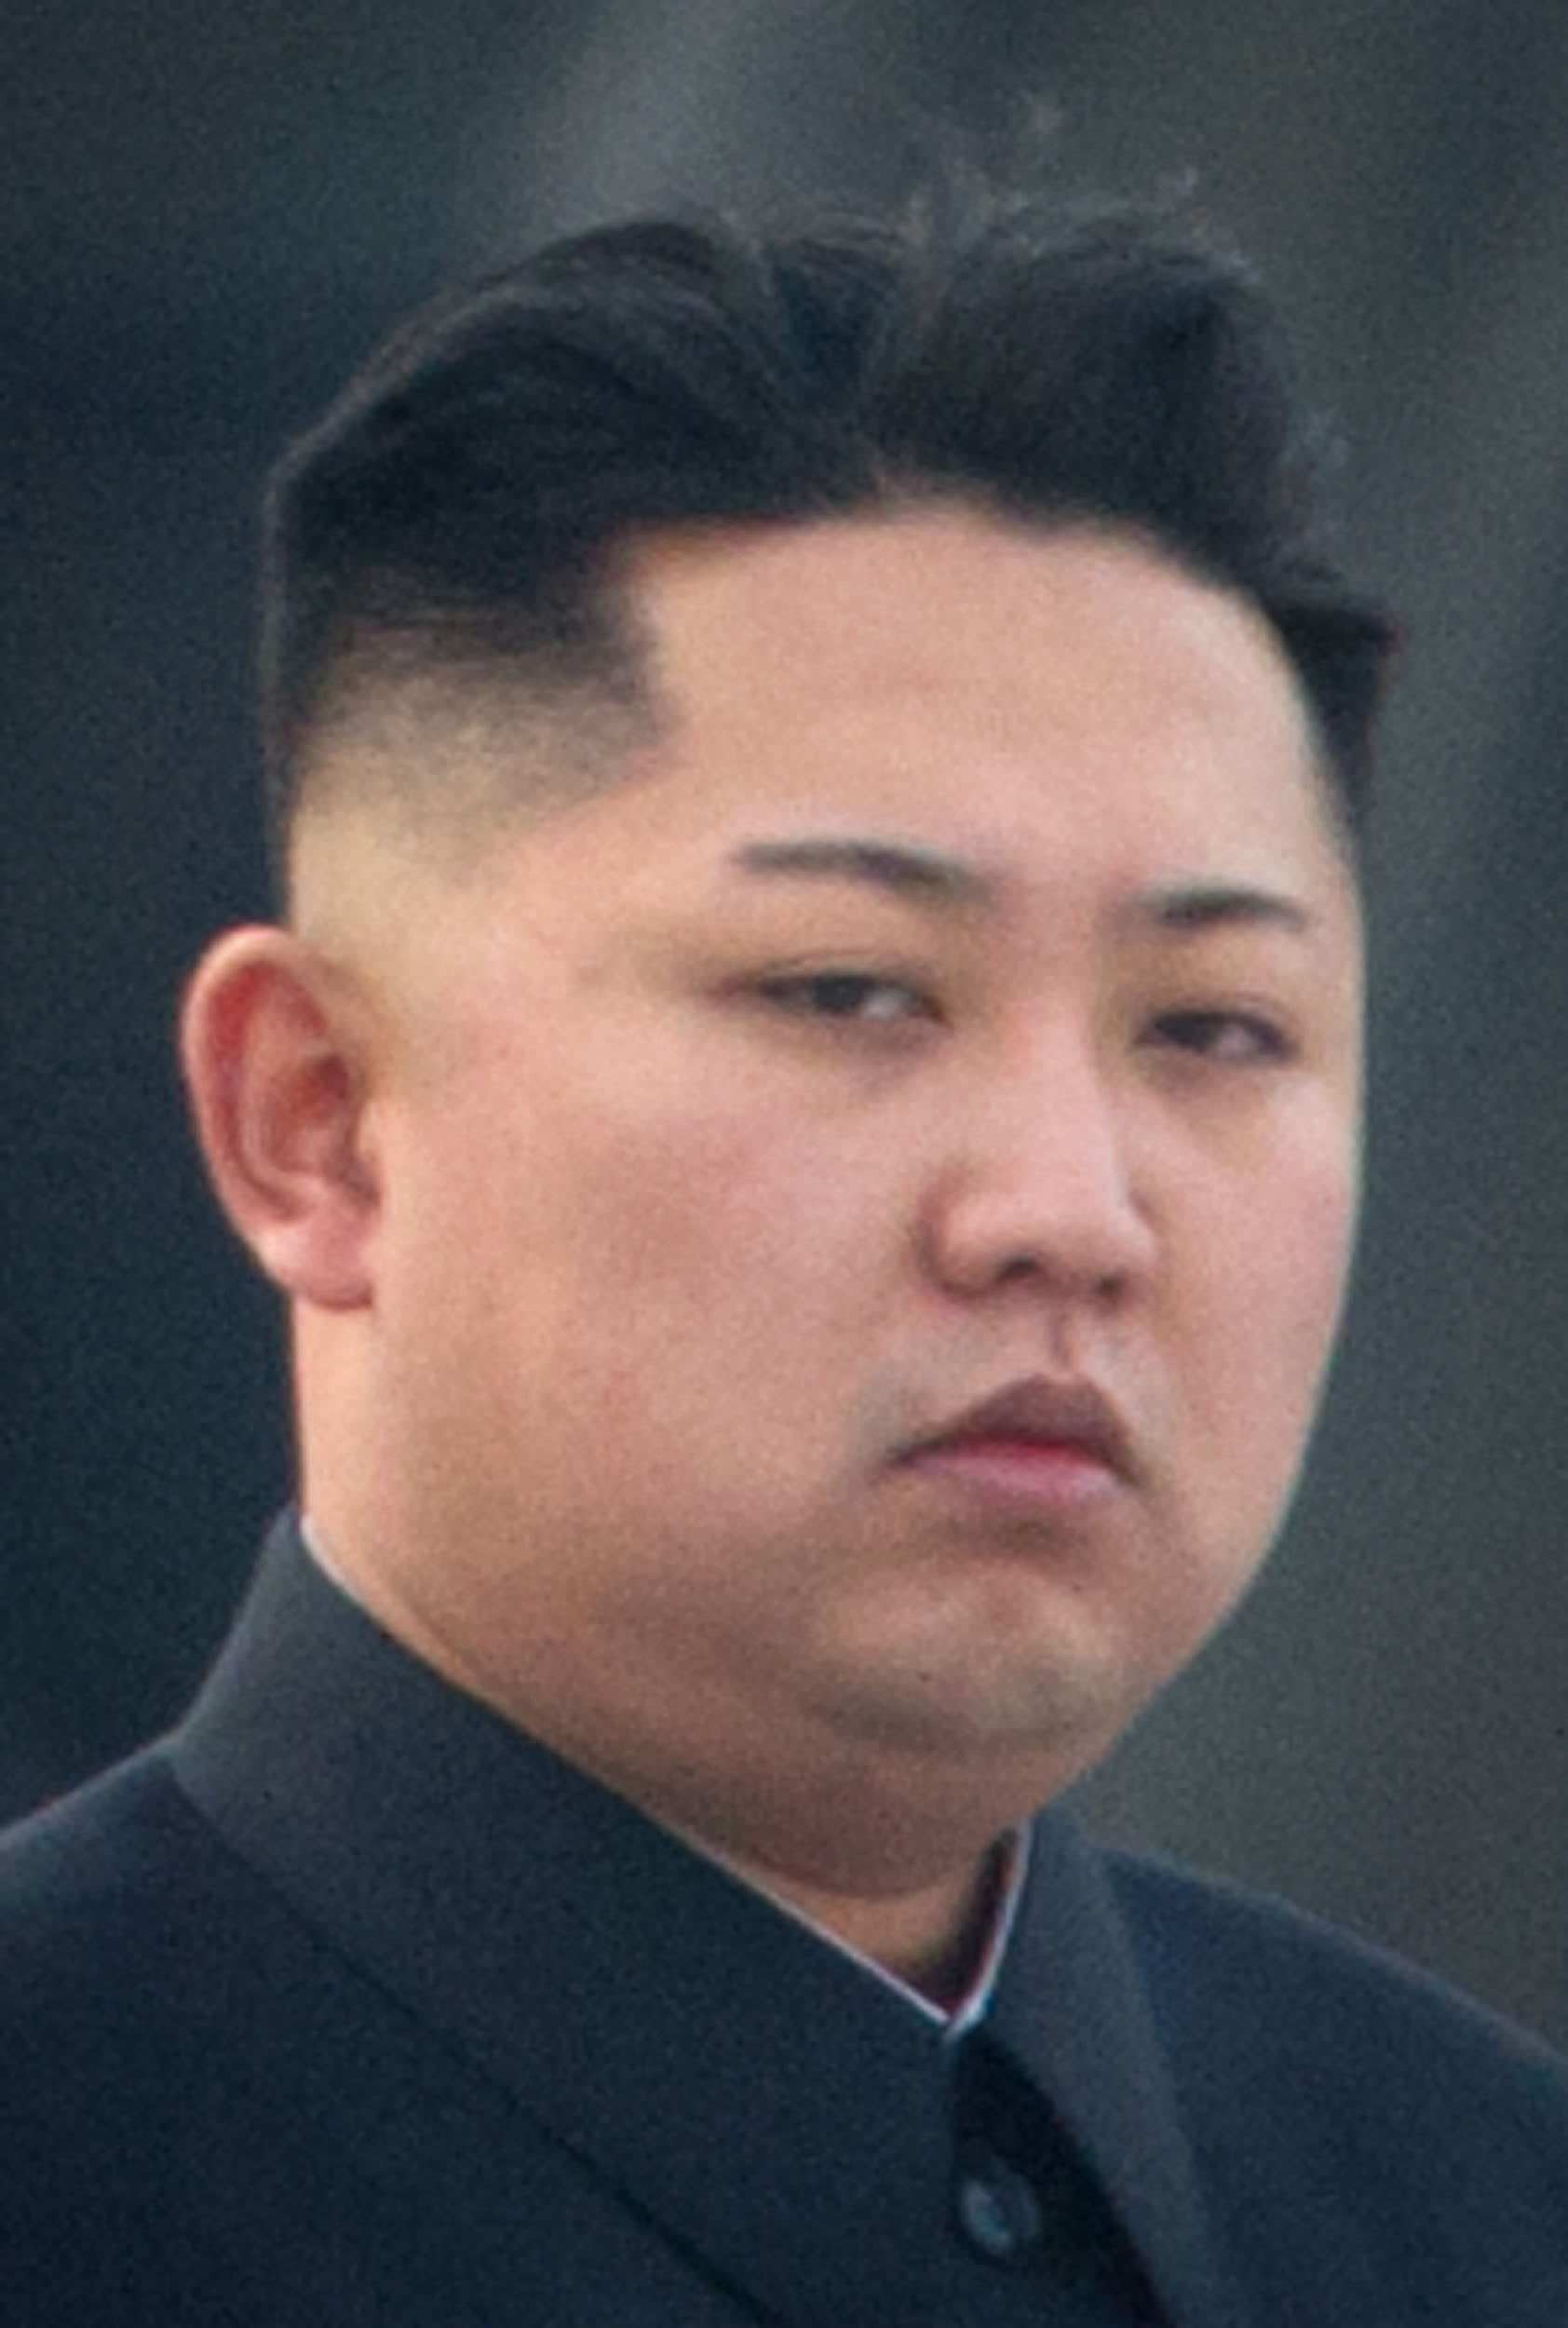 كوريا الشمالية تُعدم أكبر مسؤول تعليمي بالدولة رميا بالرصاص.. ماذا كان ذنبه؟